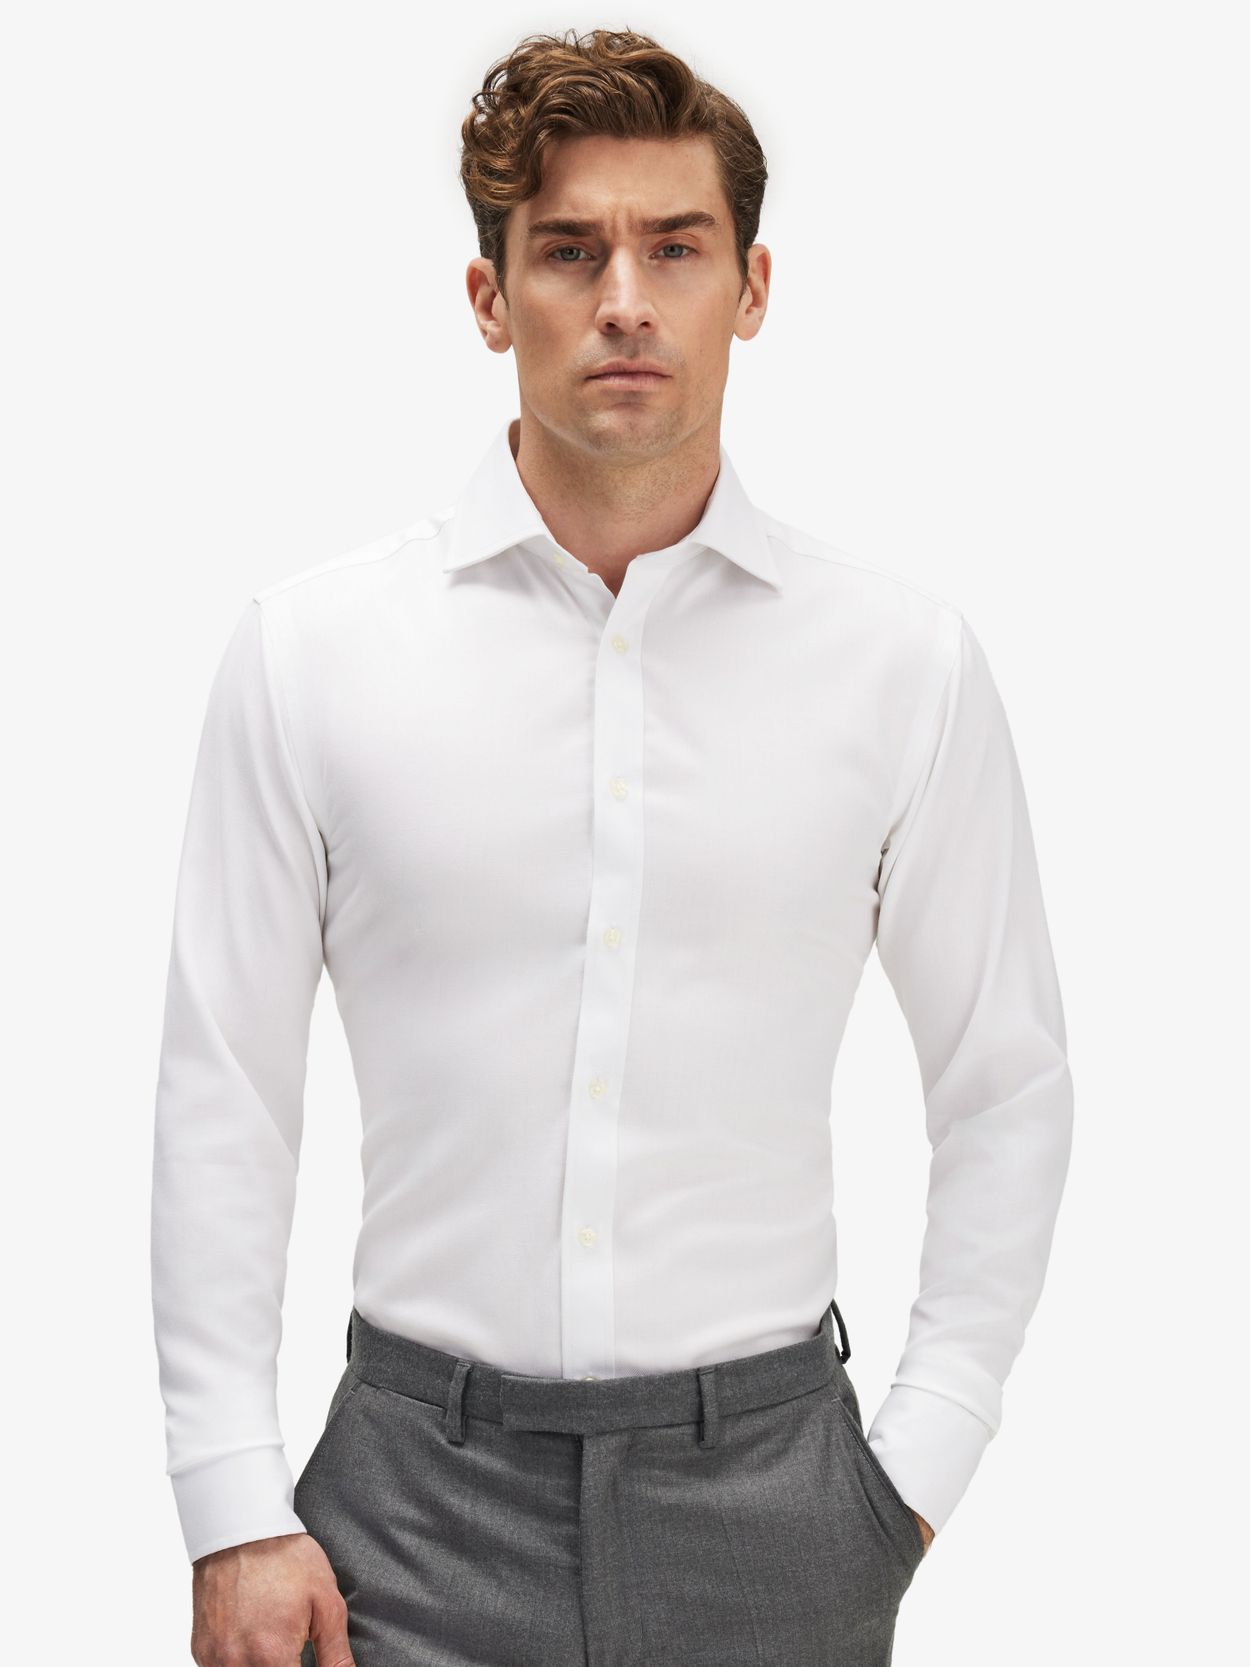 Hvid Skjorte Sildebensmønstret